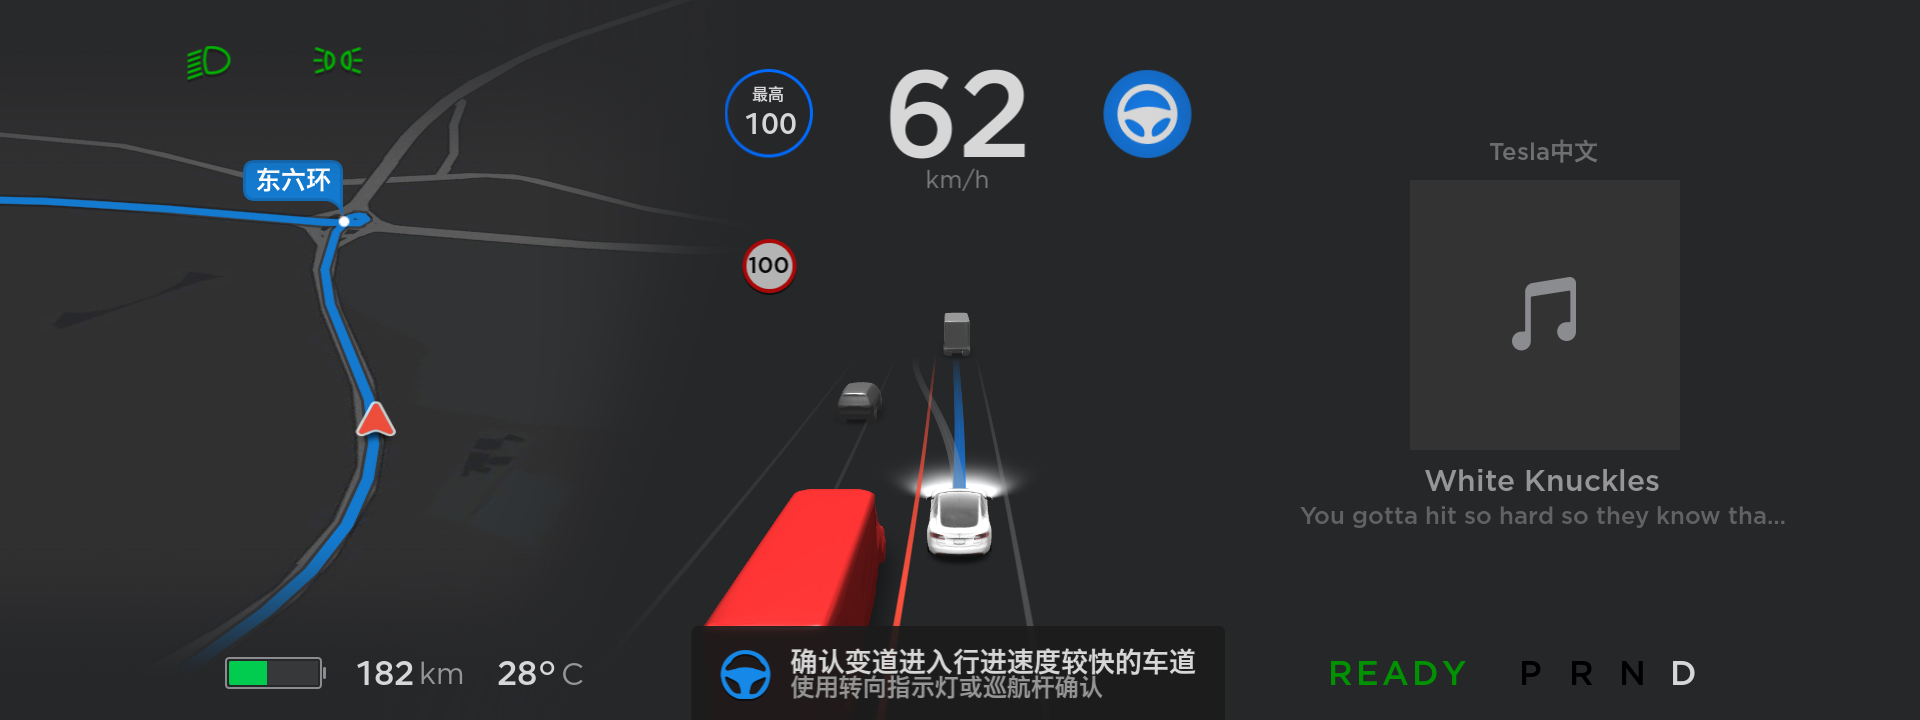 6-特斯拉在中国首次正式推出自动辅助驾驶导航功能.png